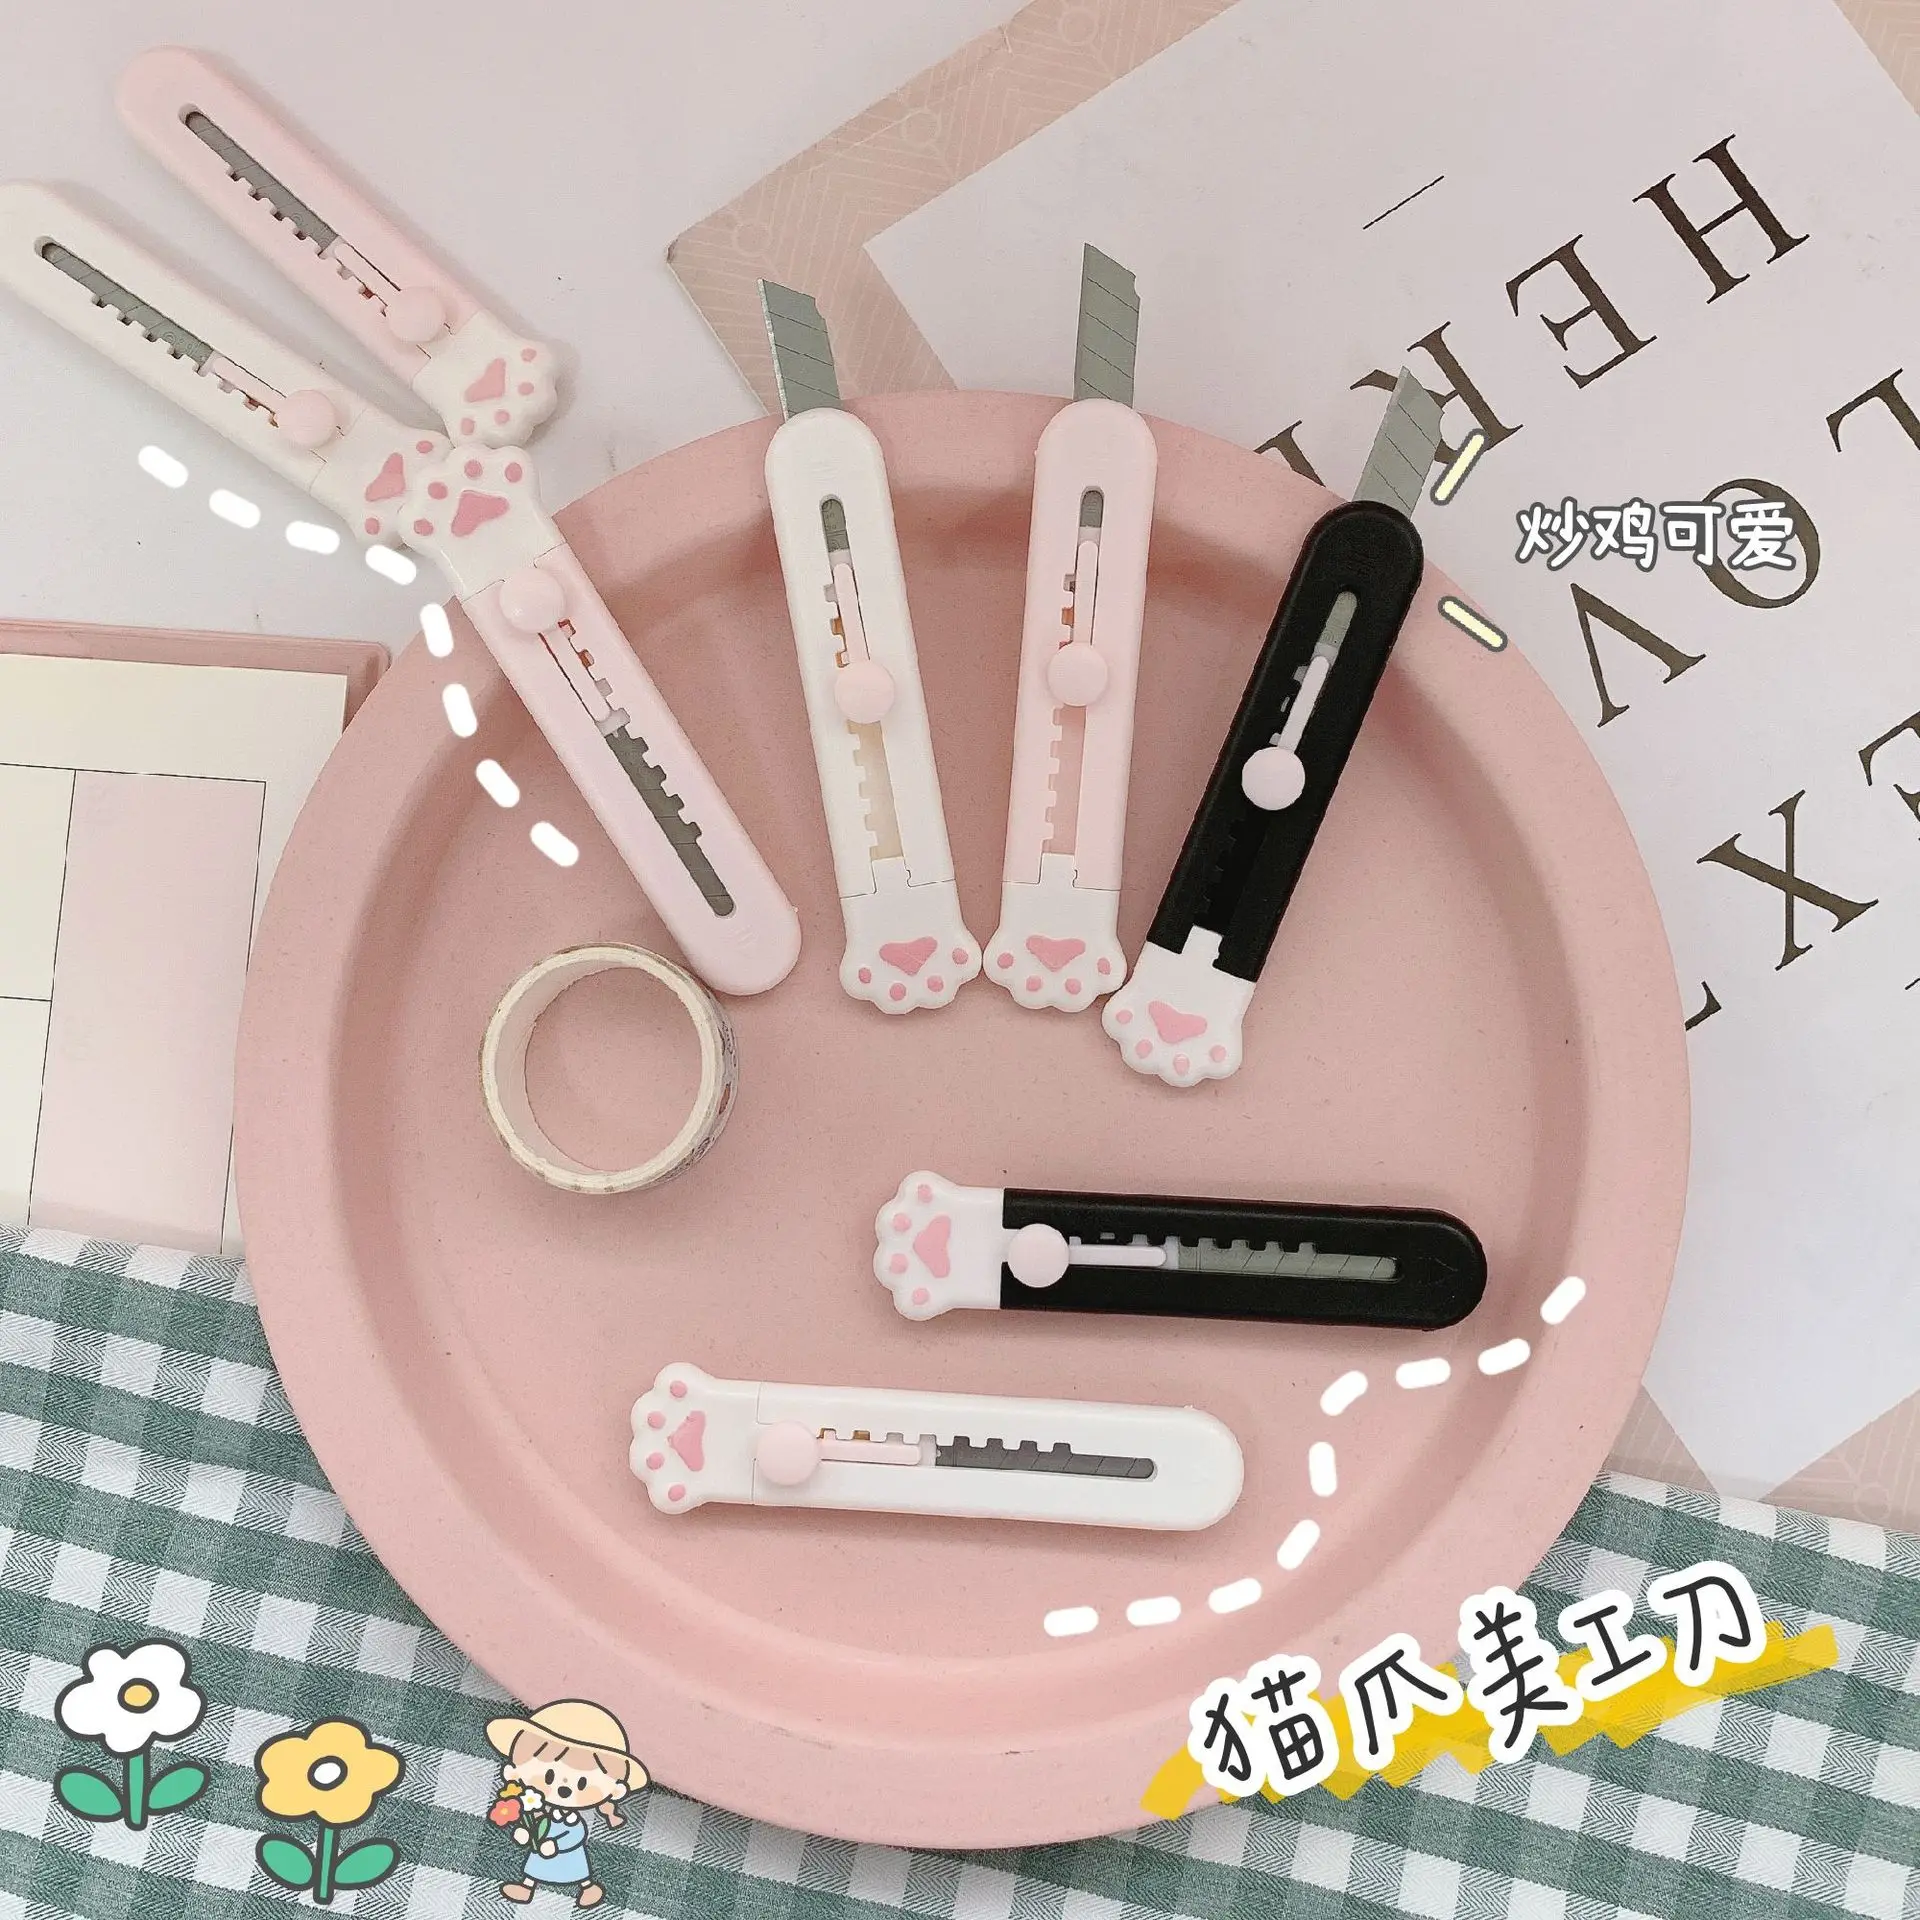 

Карманный мини-нож Kawaii для рисования кошачьей лапой, экспресс-нож, резак для бумаги, многоразовое лезвие, канцелярские товары, 1 шт.